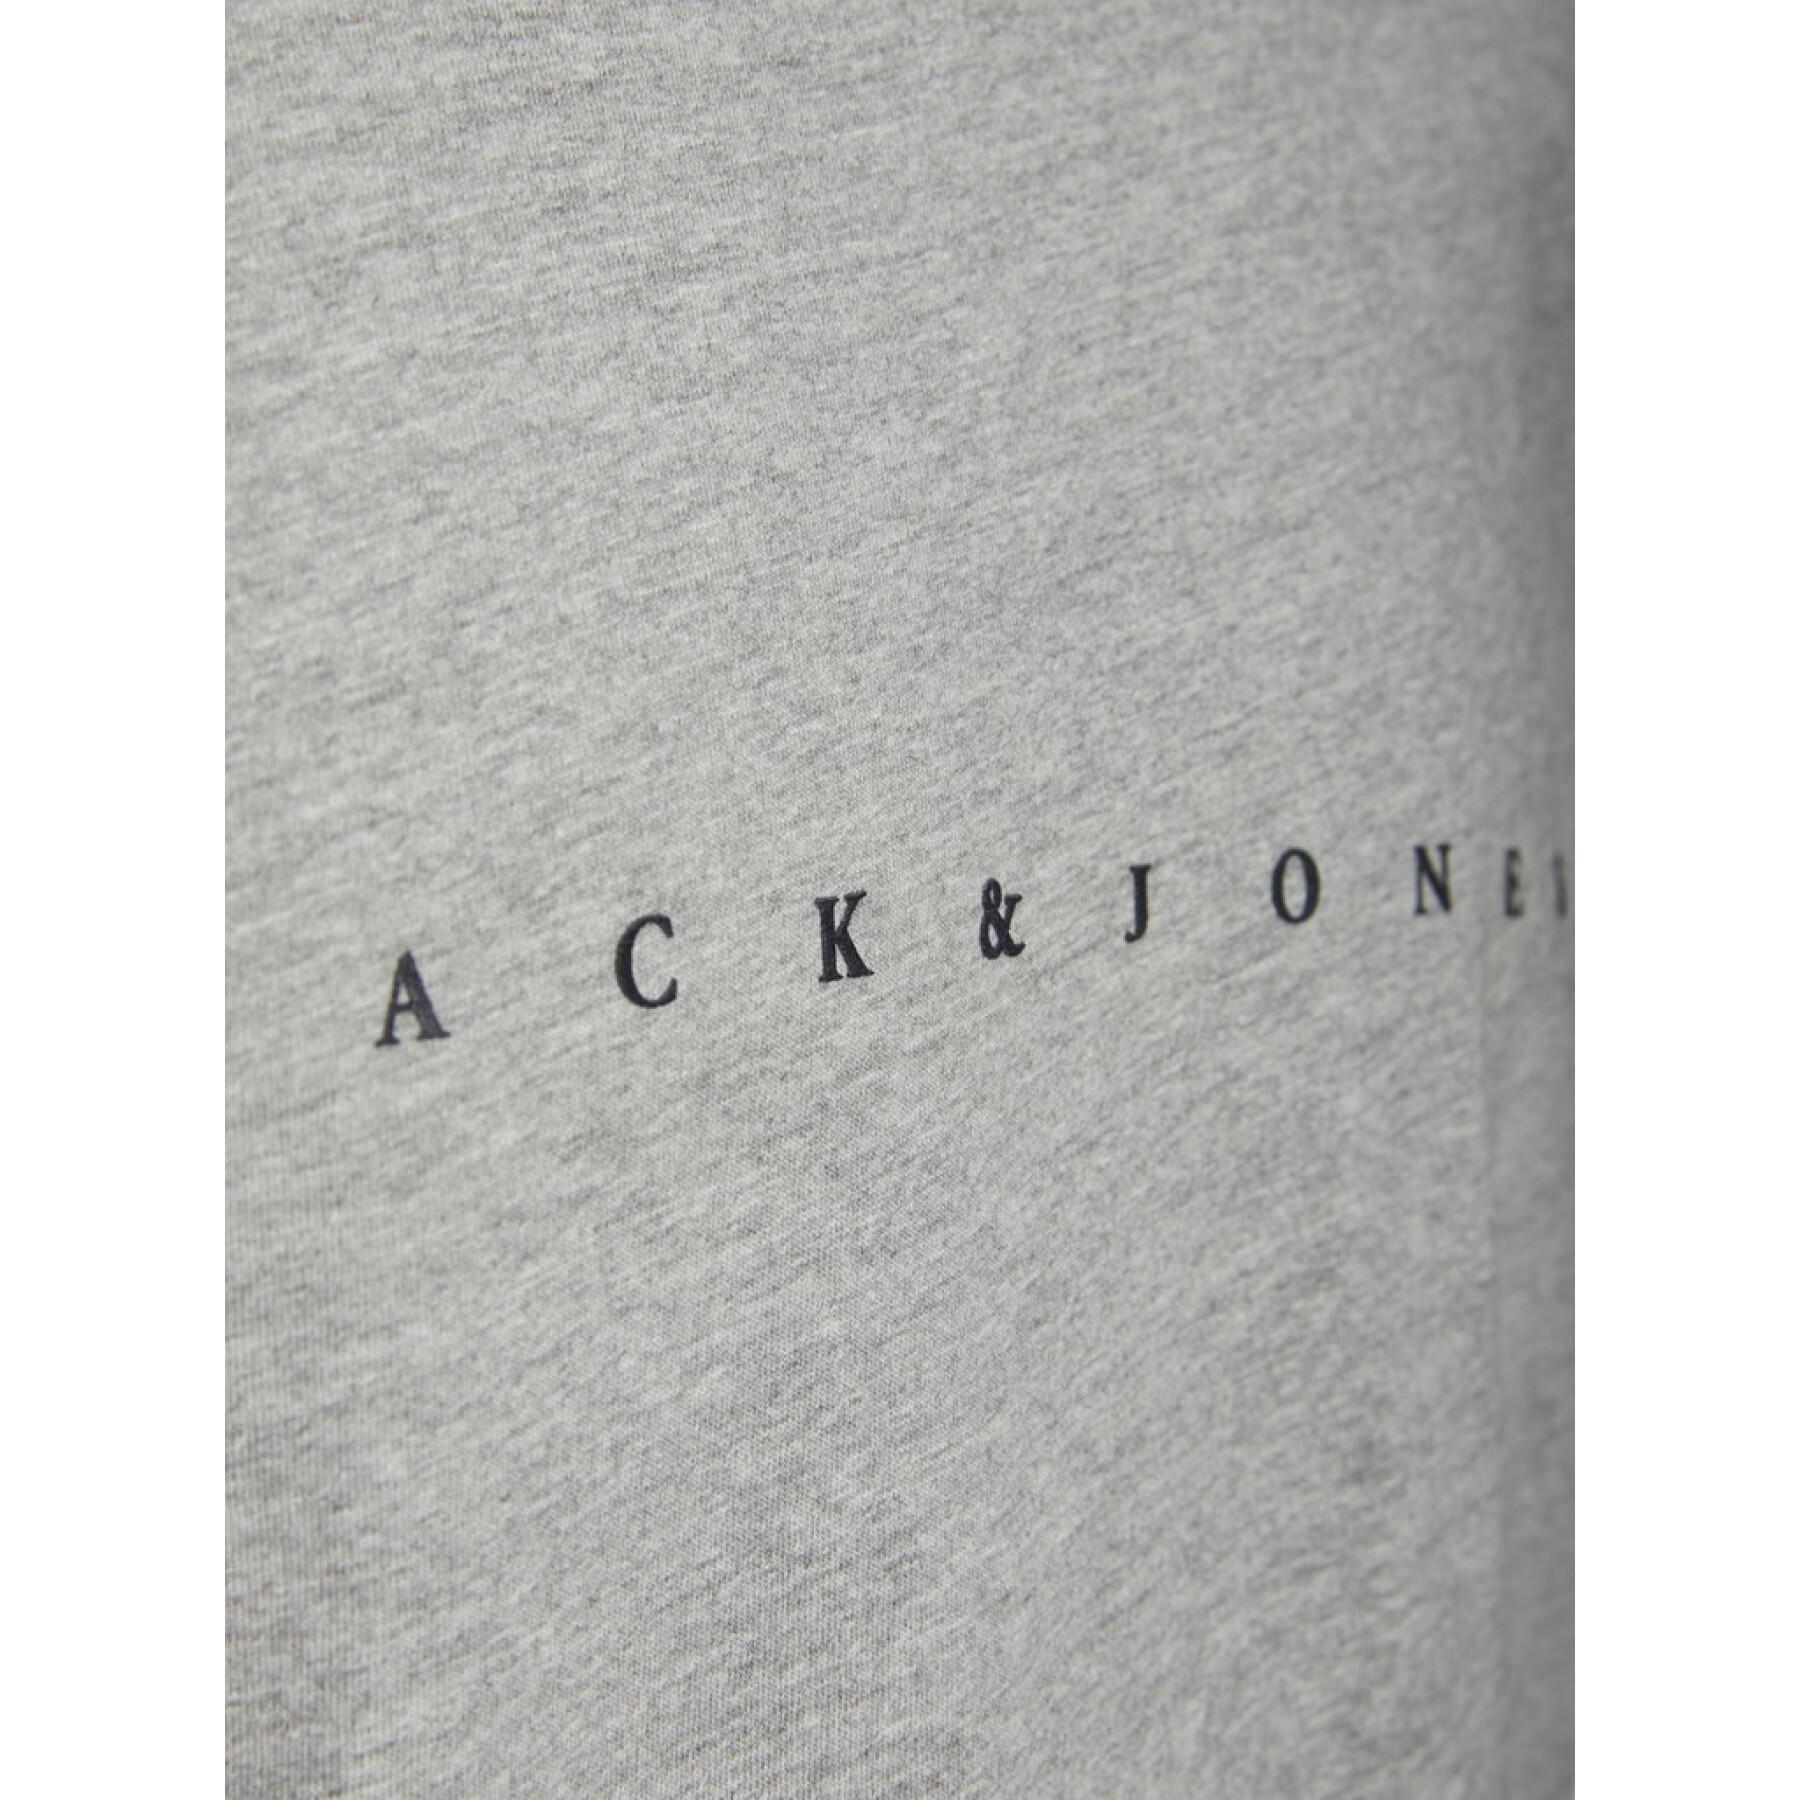 Camiseta de manga corta Jack & Jones jjfont